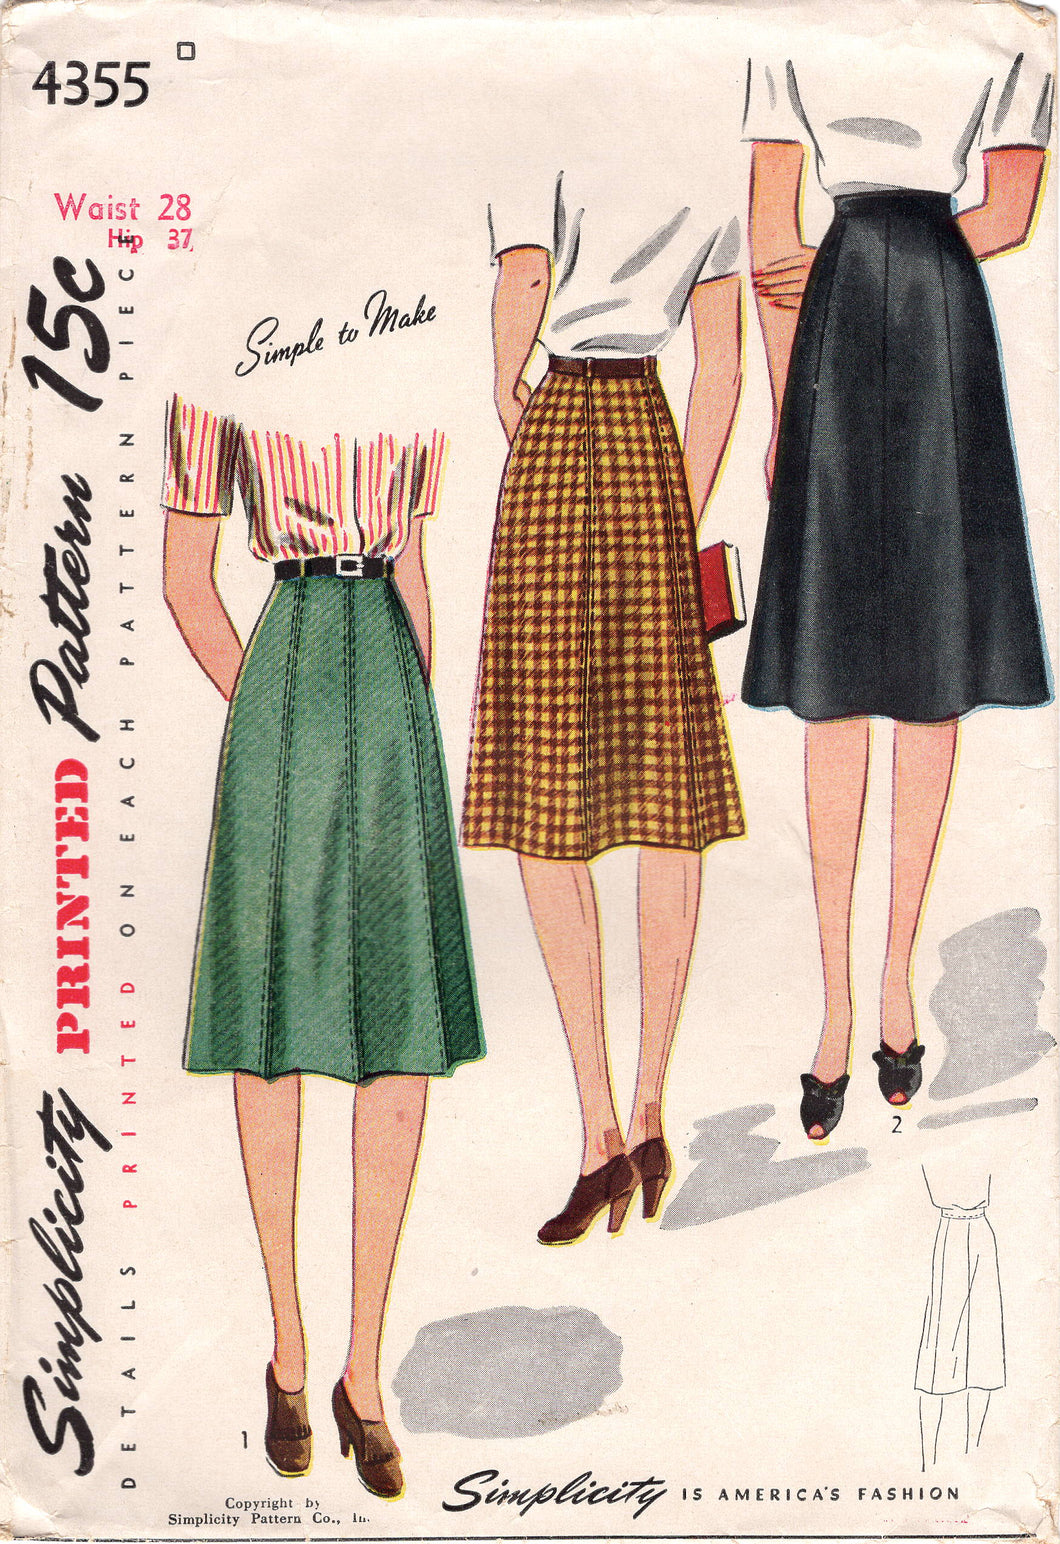 1940's Simplicity A line 7 gore Skirt - Waist 28